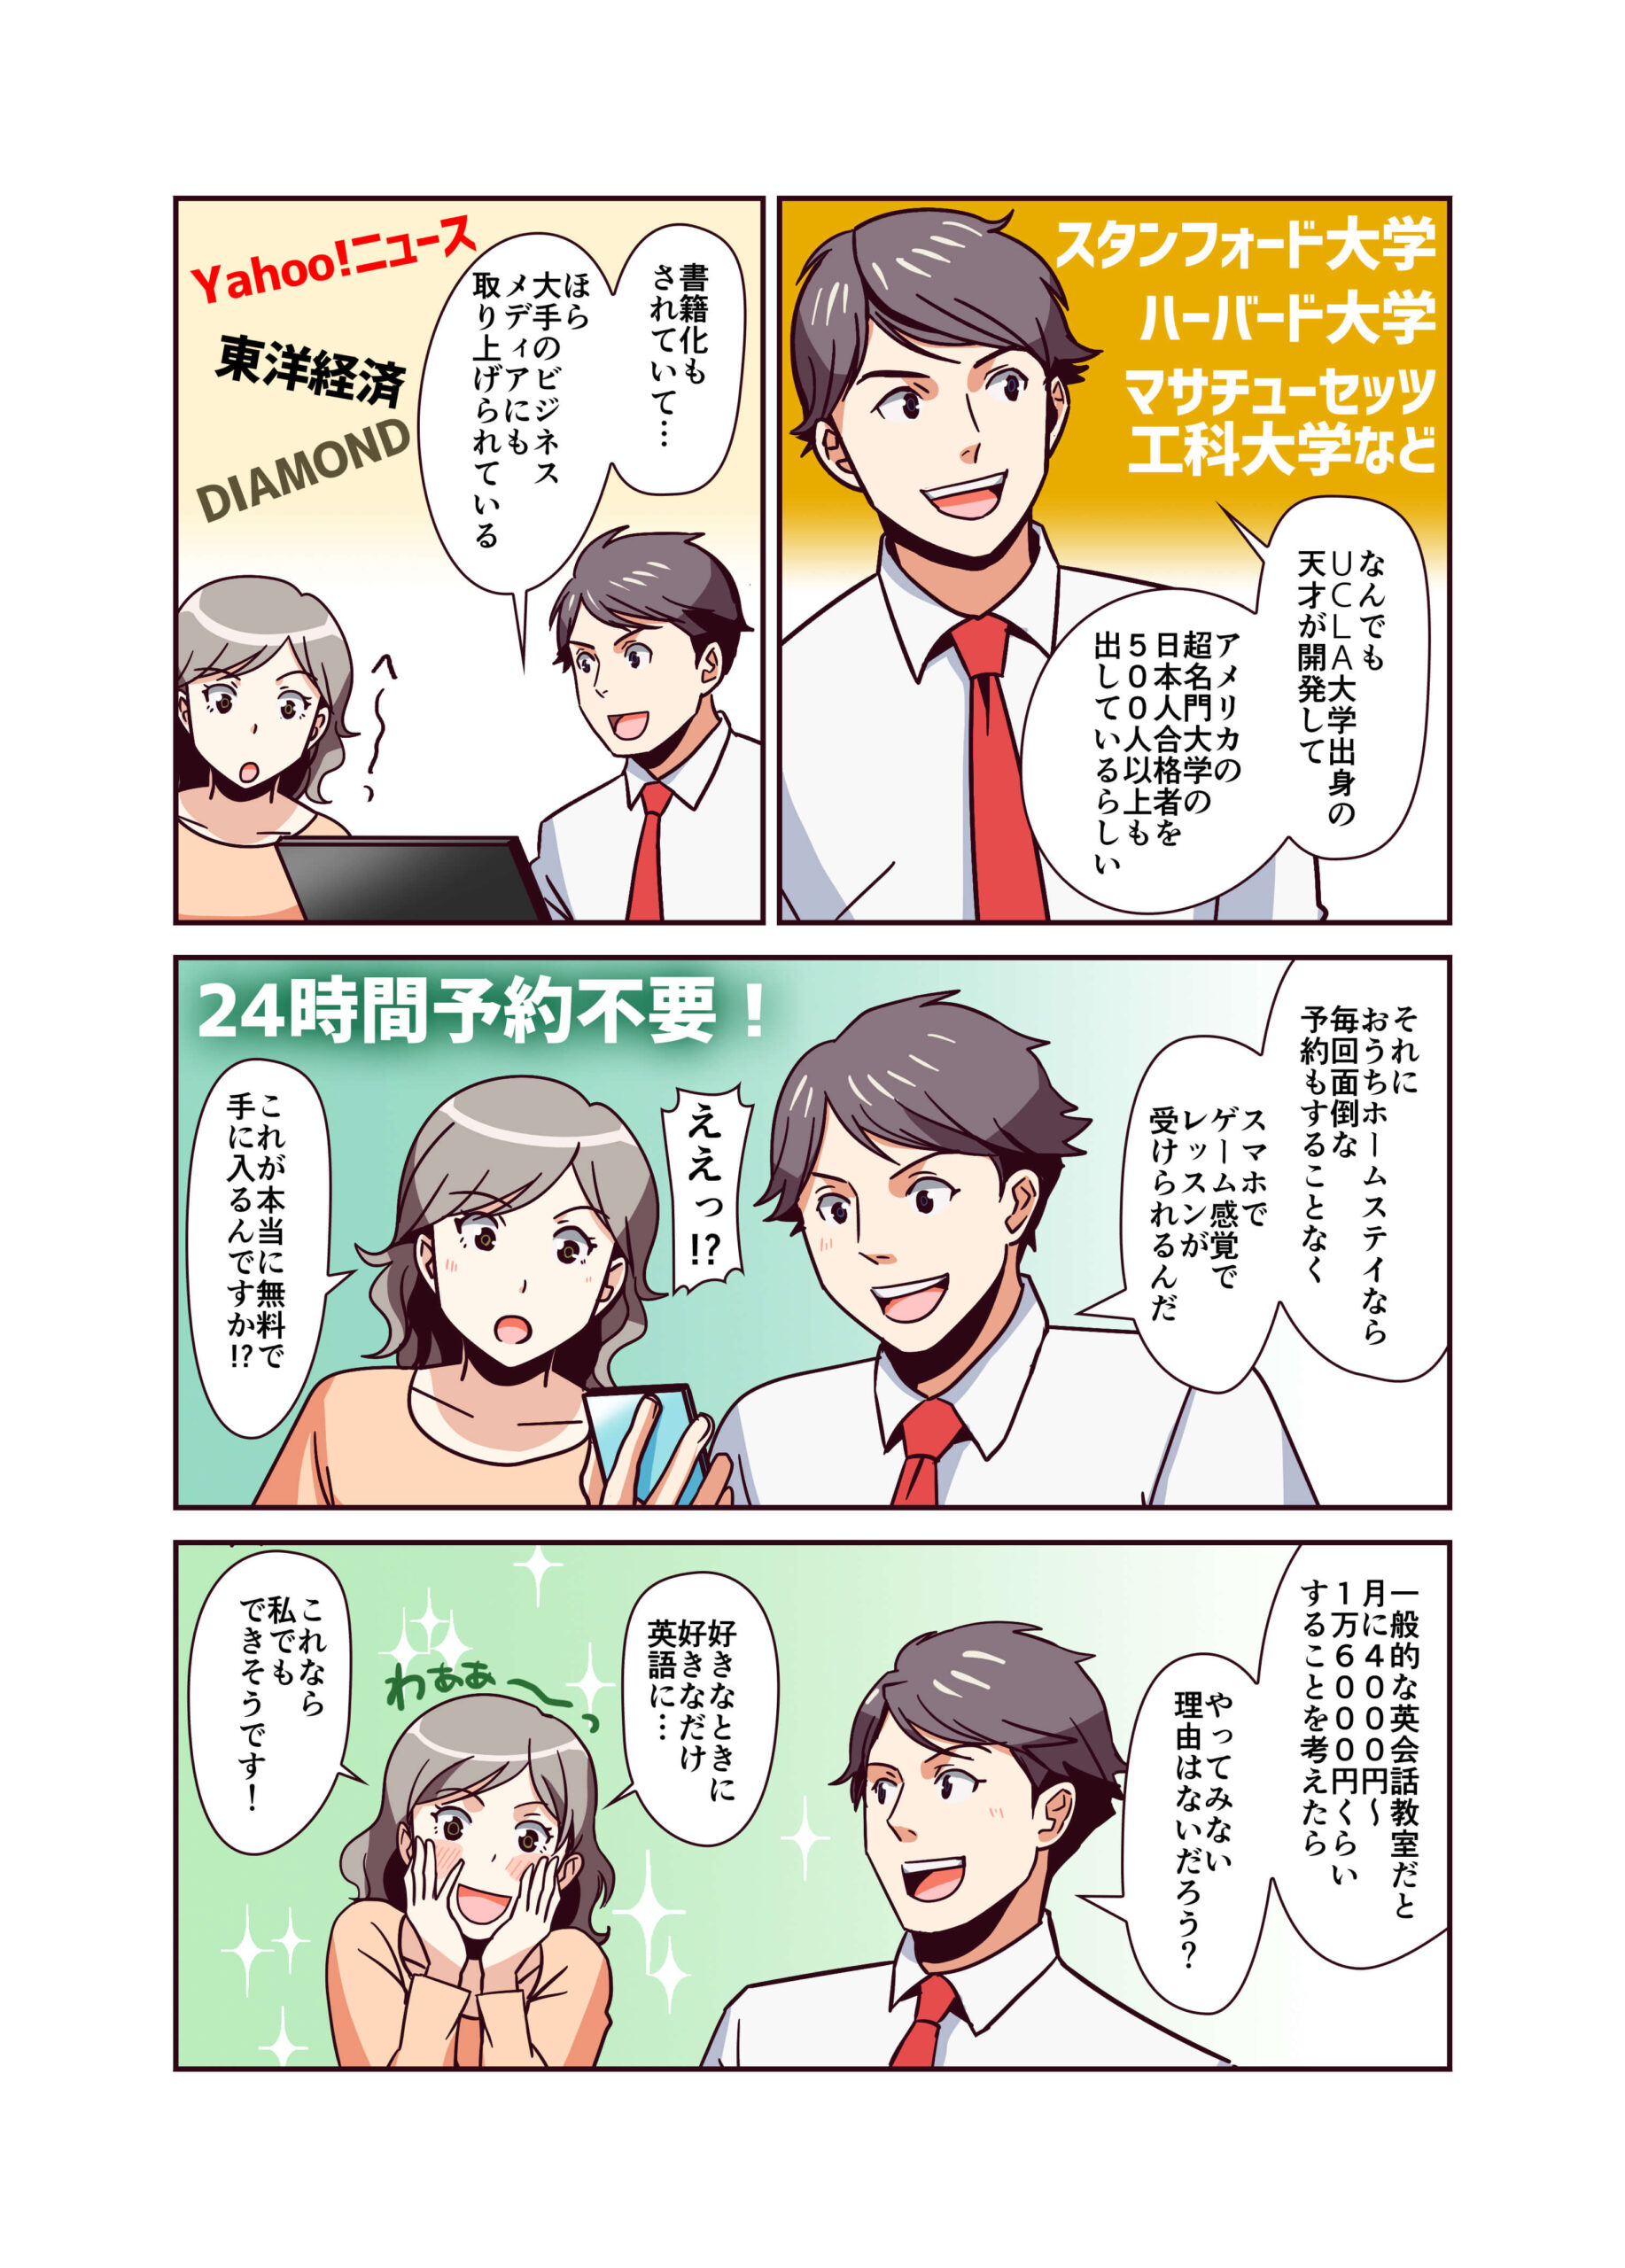 おうちホームステイ宣伝漫画・イラスト